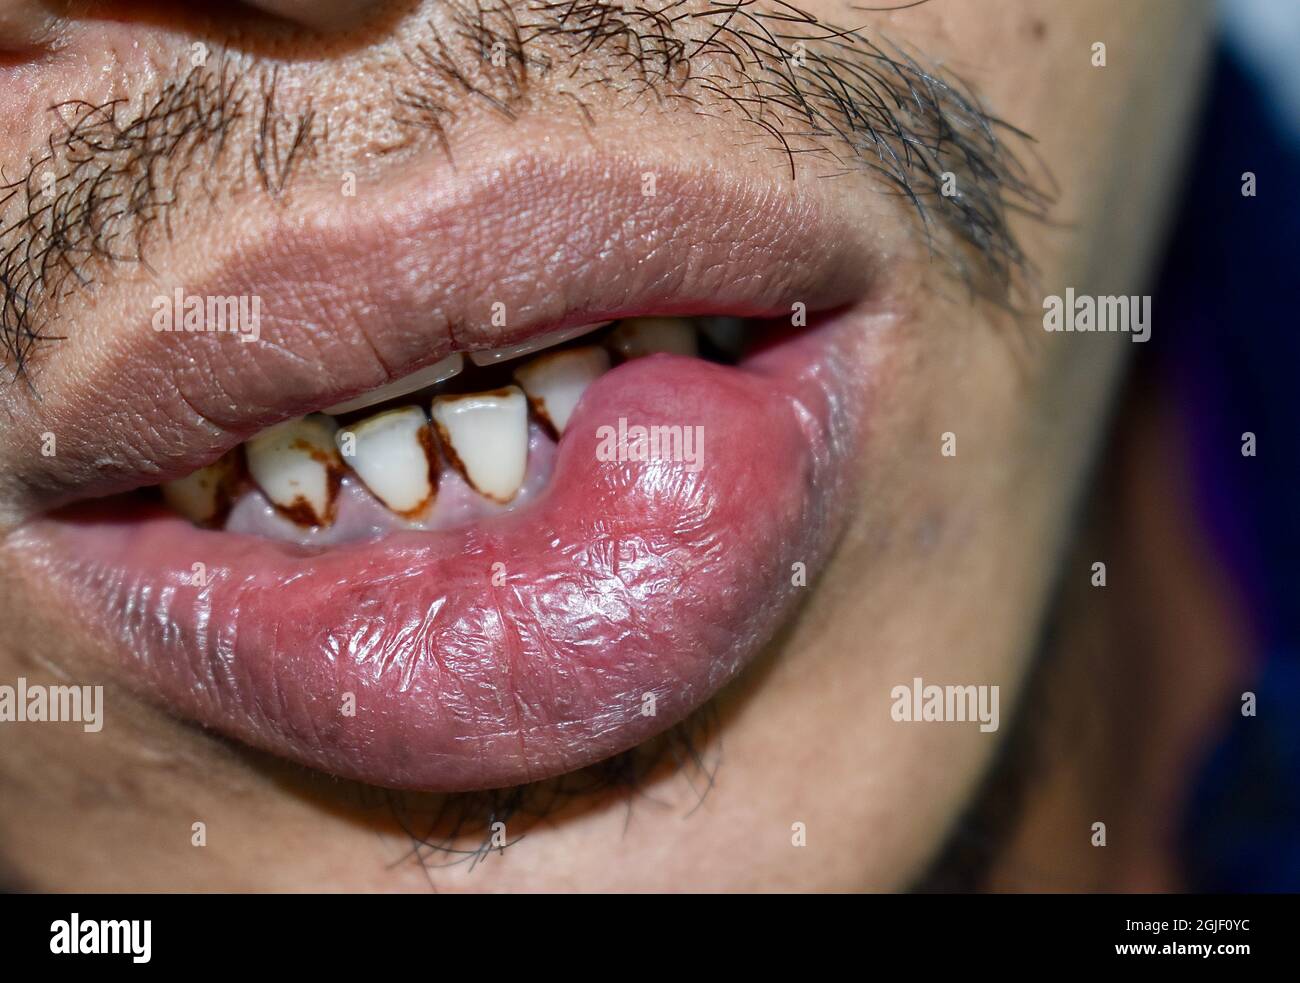 Abcès ou kyste avec pus à la lèvre inférieure de l'homme asiatique. Banque D'Images